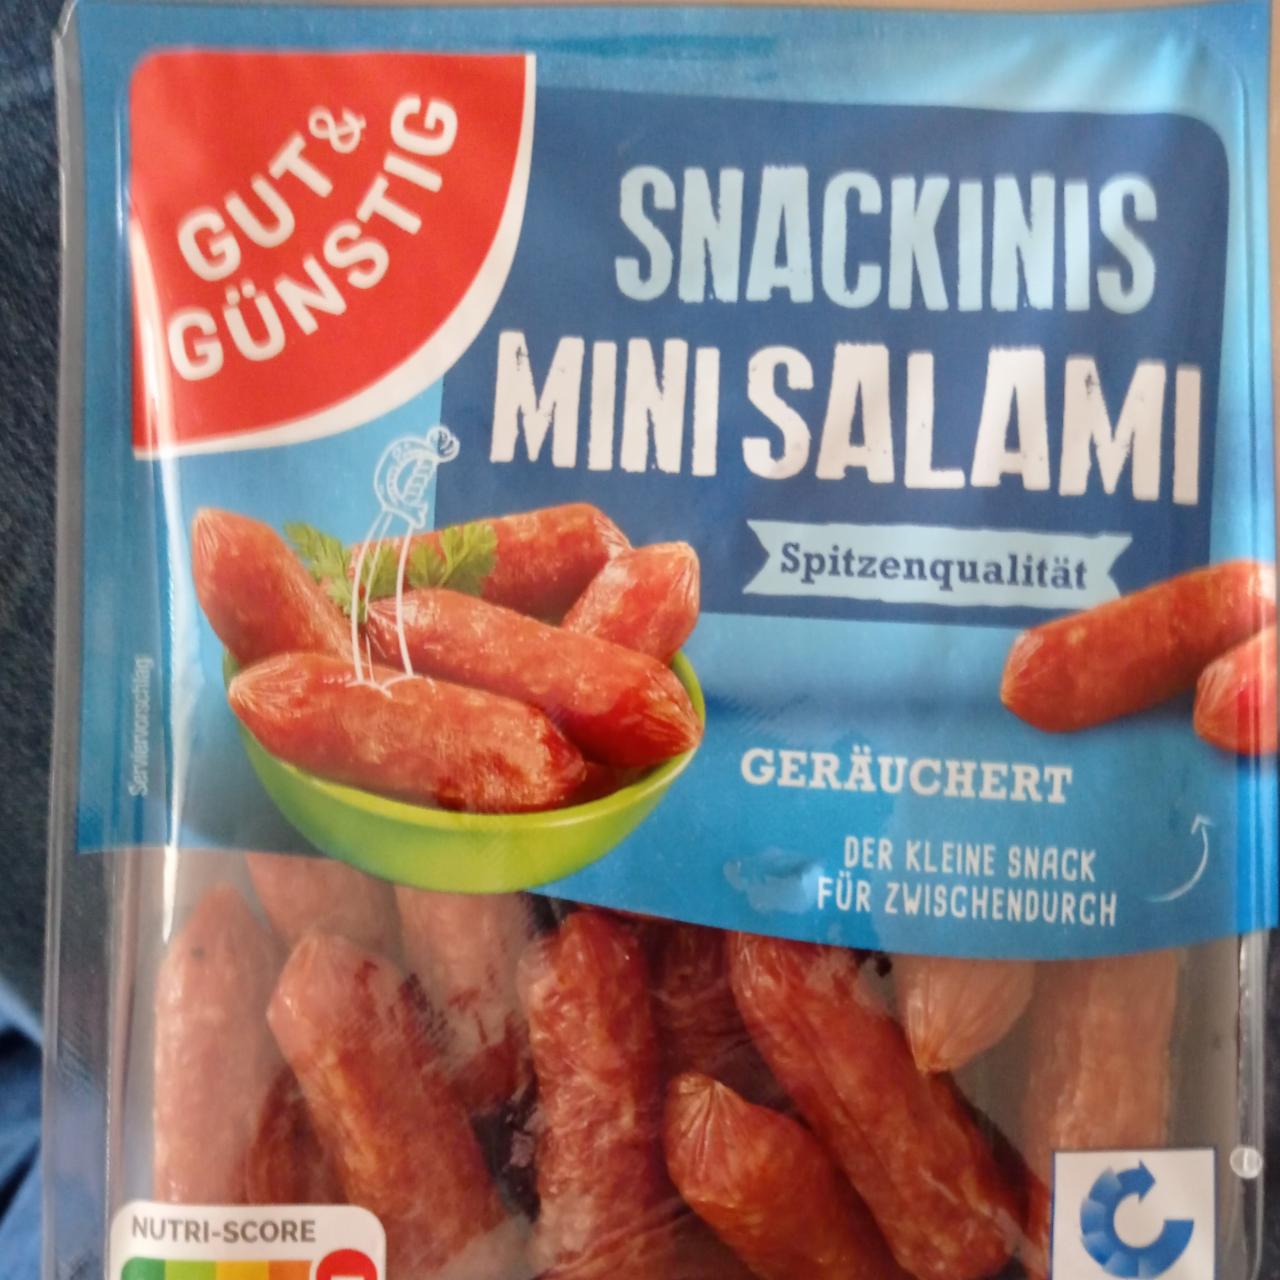 Фото - Міні-салямі Snackinis Mini Salami Gut & Gunstig